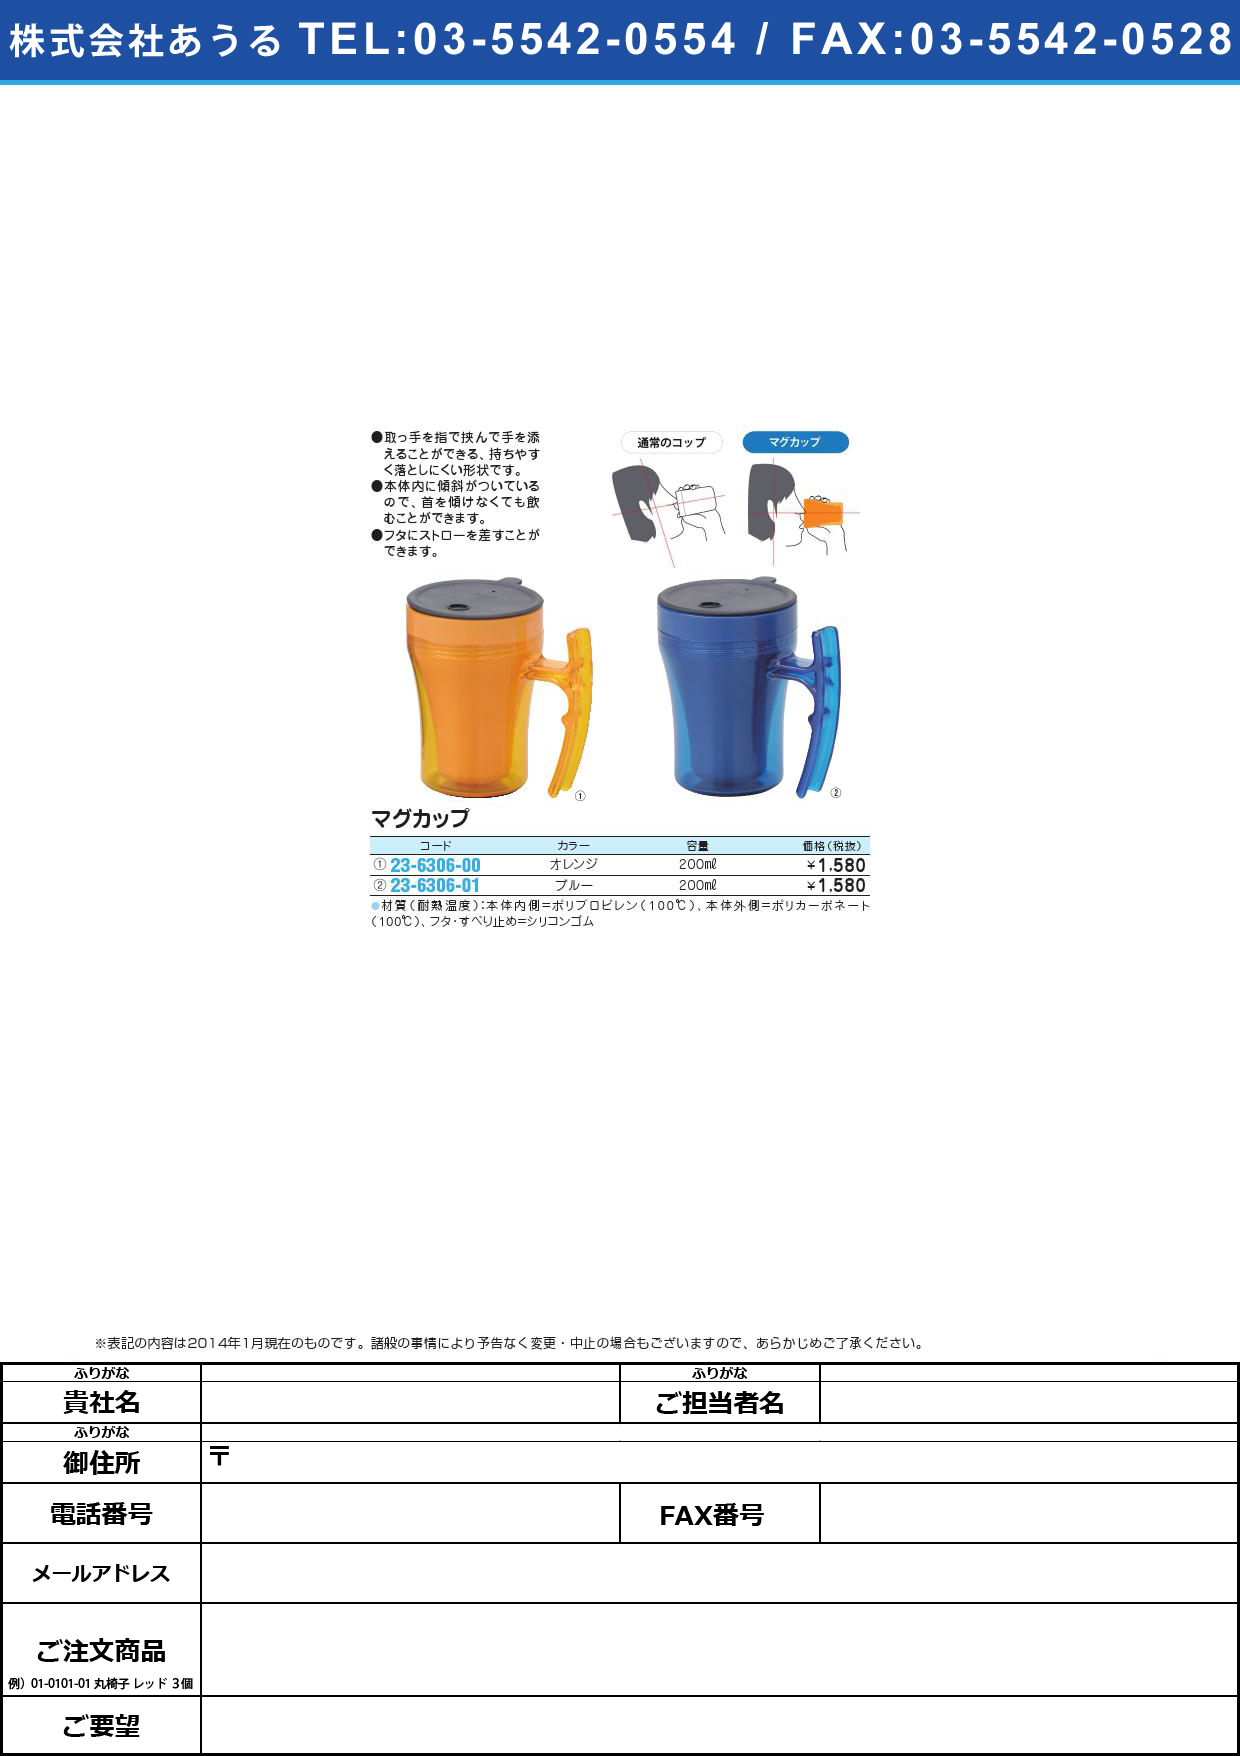 (23-6306-00)テイコブマグカップ ﾃｲｺﾌﾞﾏｸﾞｶｯﾌﾟ(23-6306-00)C02(ｵﾚﾝｼﾞ)【1個単位】【2014年カタログ商品】